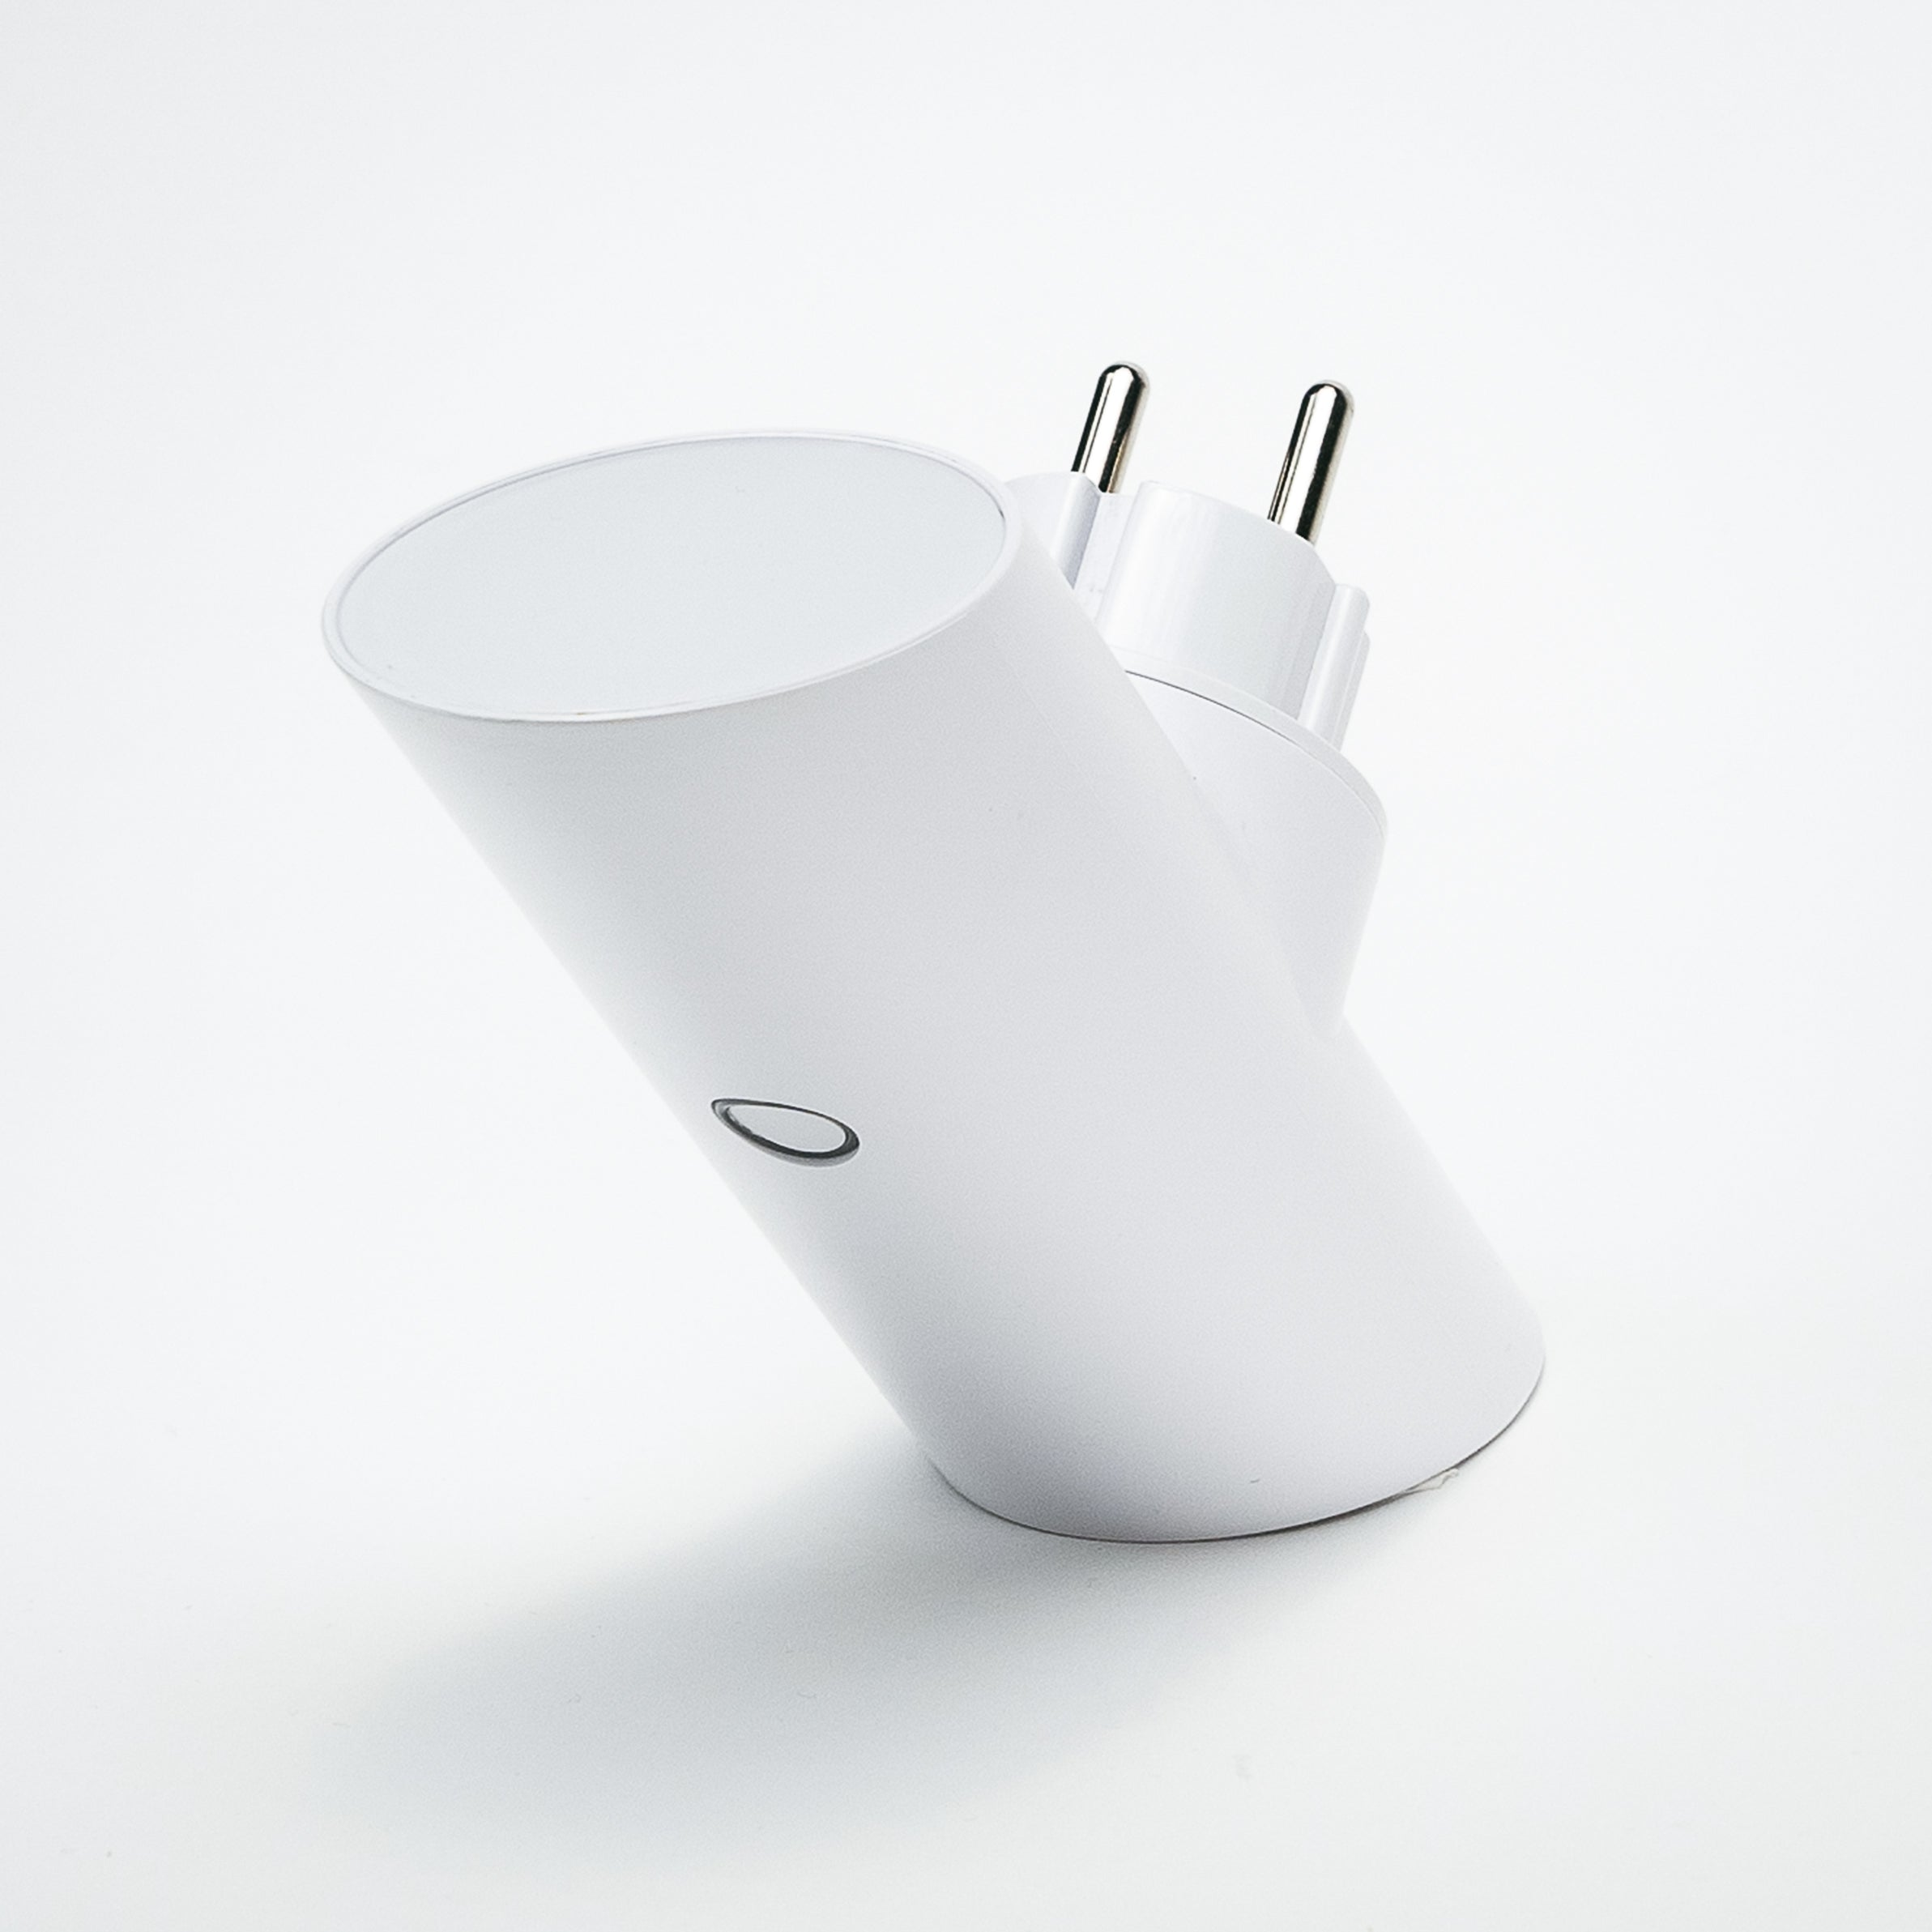 SMART TECH Spotlight Wallcharger mit POWER-HUBS Samsung, Sony Bose, Weiß etc...., Apple, Adapter 4